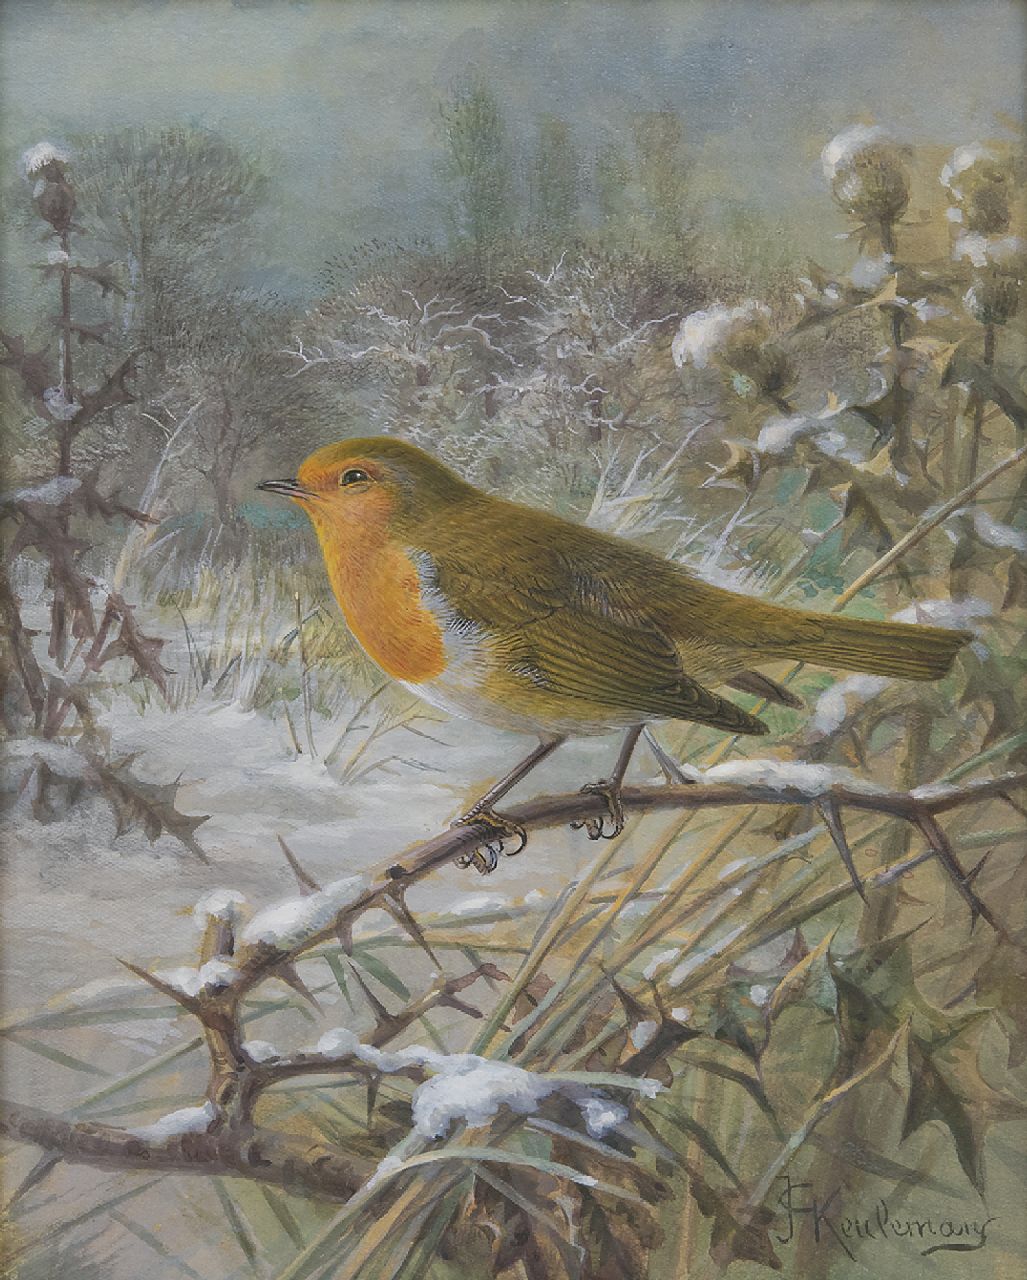 Keulemans J.G.  | Johannes Gerardus Keulemans, A robin in a snowy landscape, gouache on paper 21.5 x 17.0 cm, signed l.r.